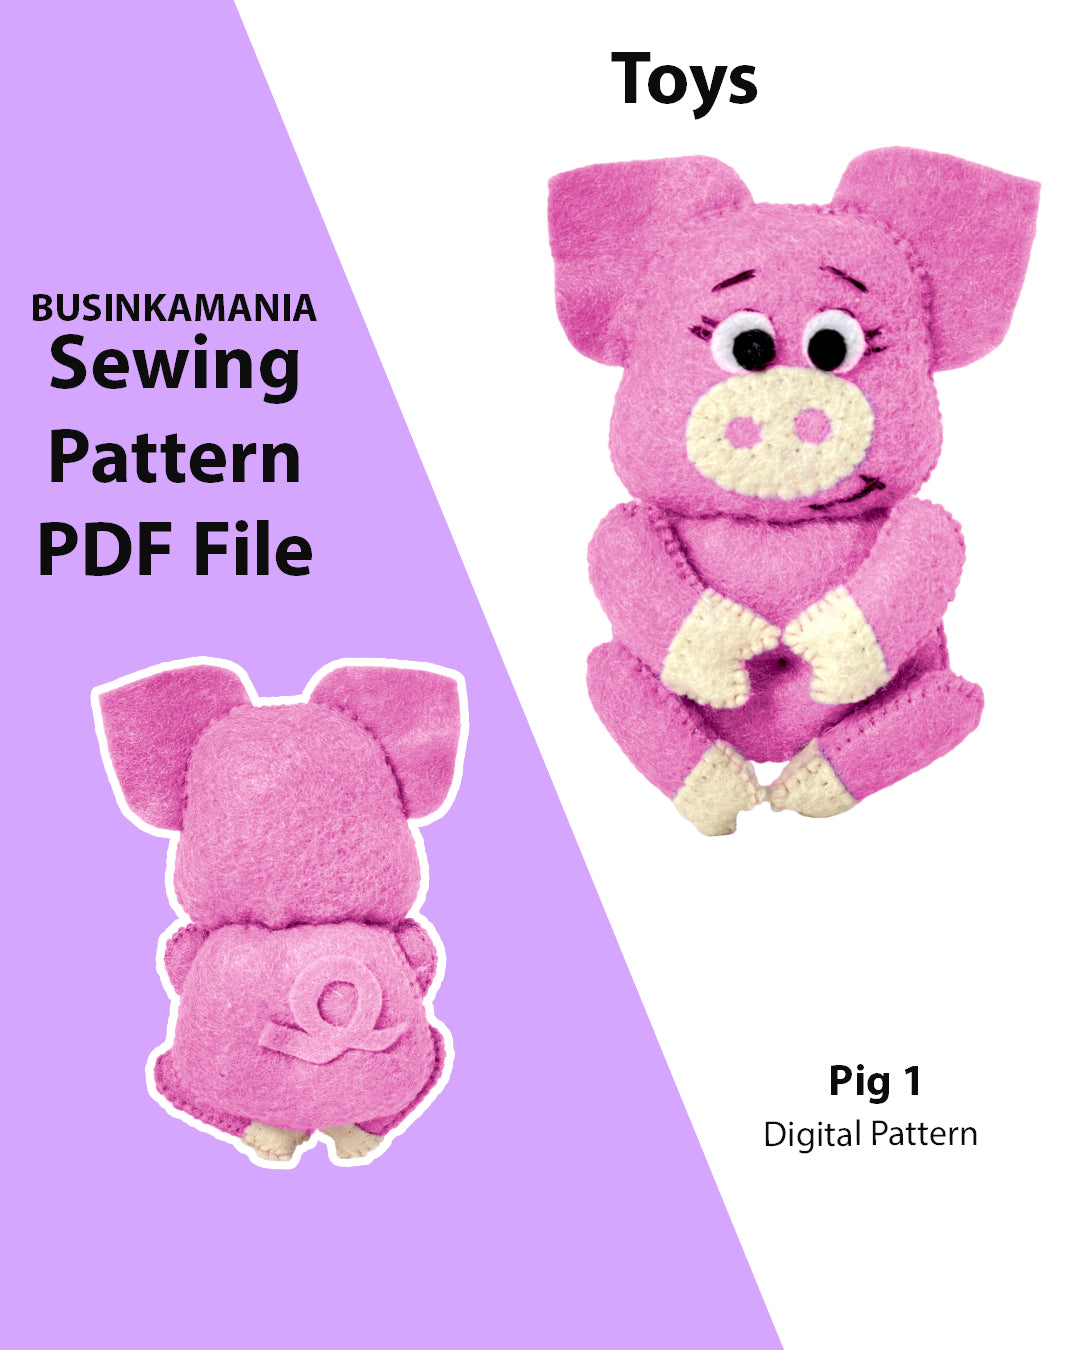 Padrão de costura de brinquedo de feltro Pig 1